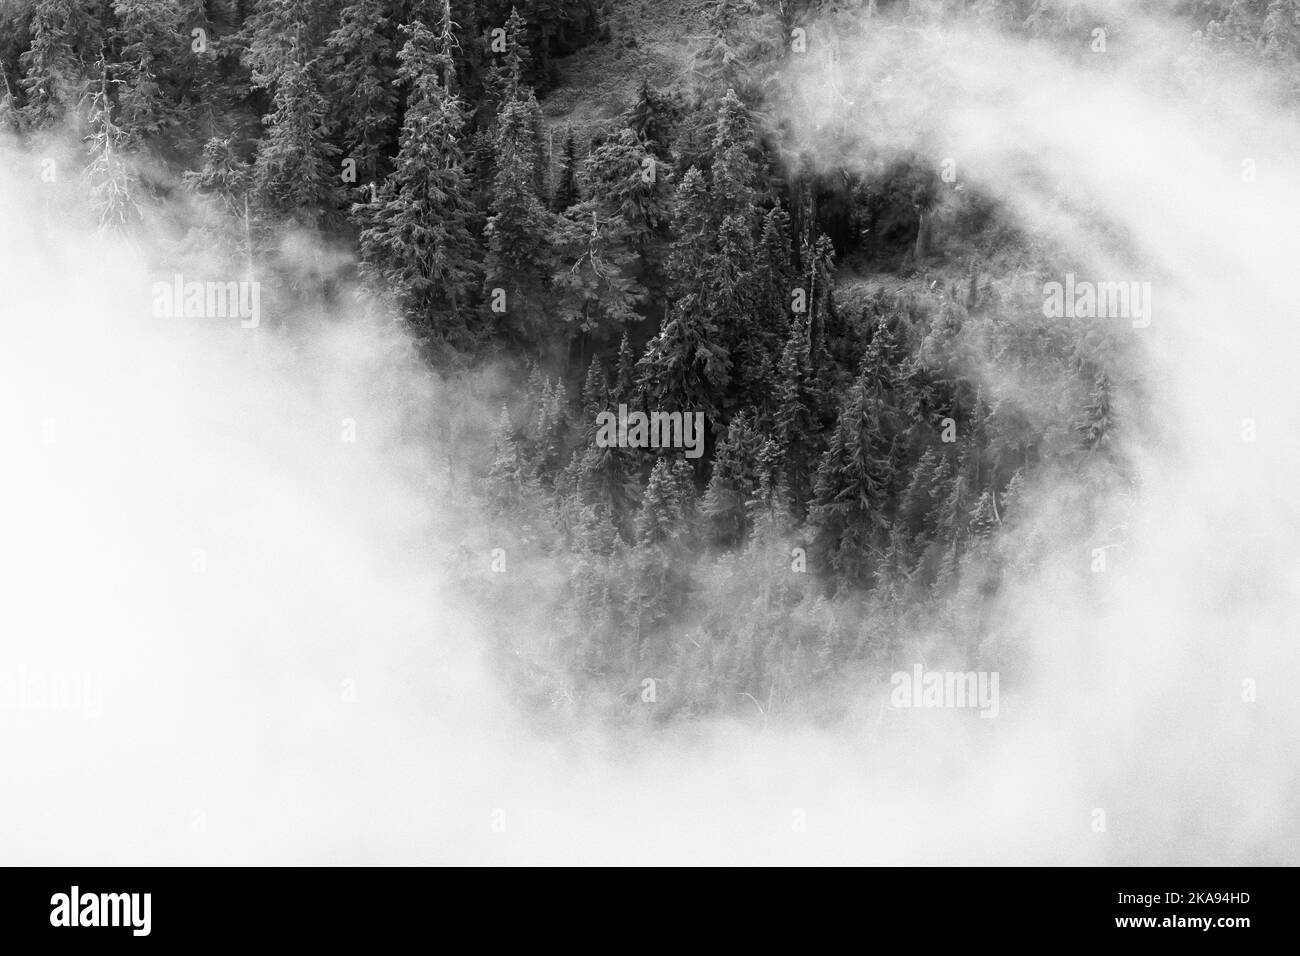 Zen-ähnliche niedrige Wolken und Bäume vom Evergreen Mountain Lookout, Cascade Range, Mt. Baker-Snoqualmie National Forest, Staat Washington, USA Stockfoto